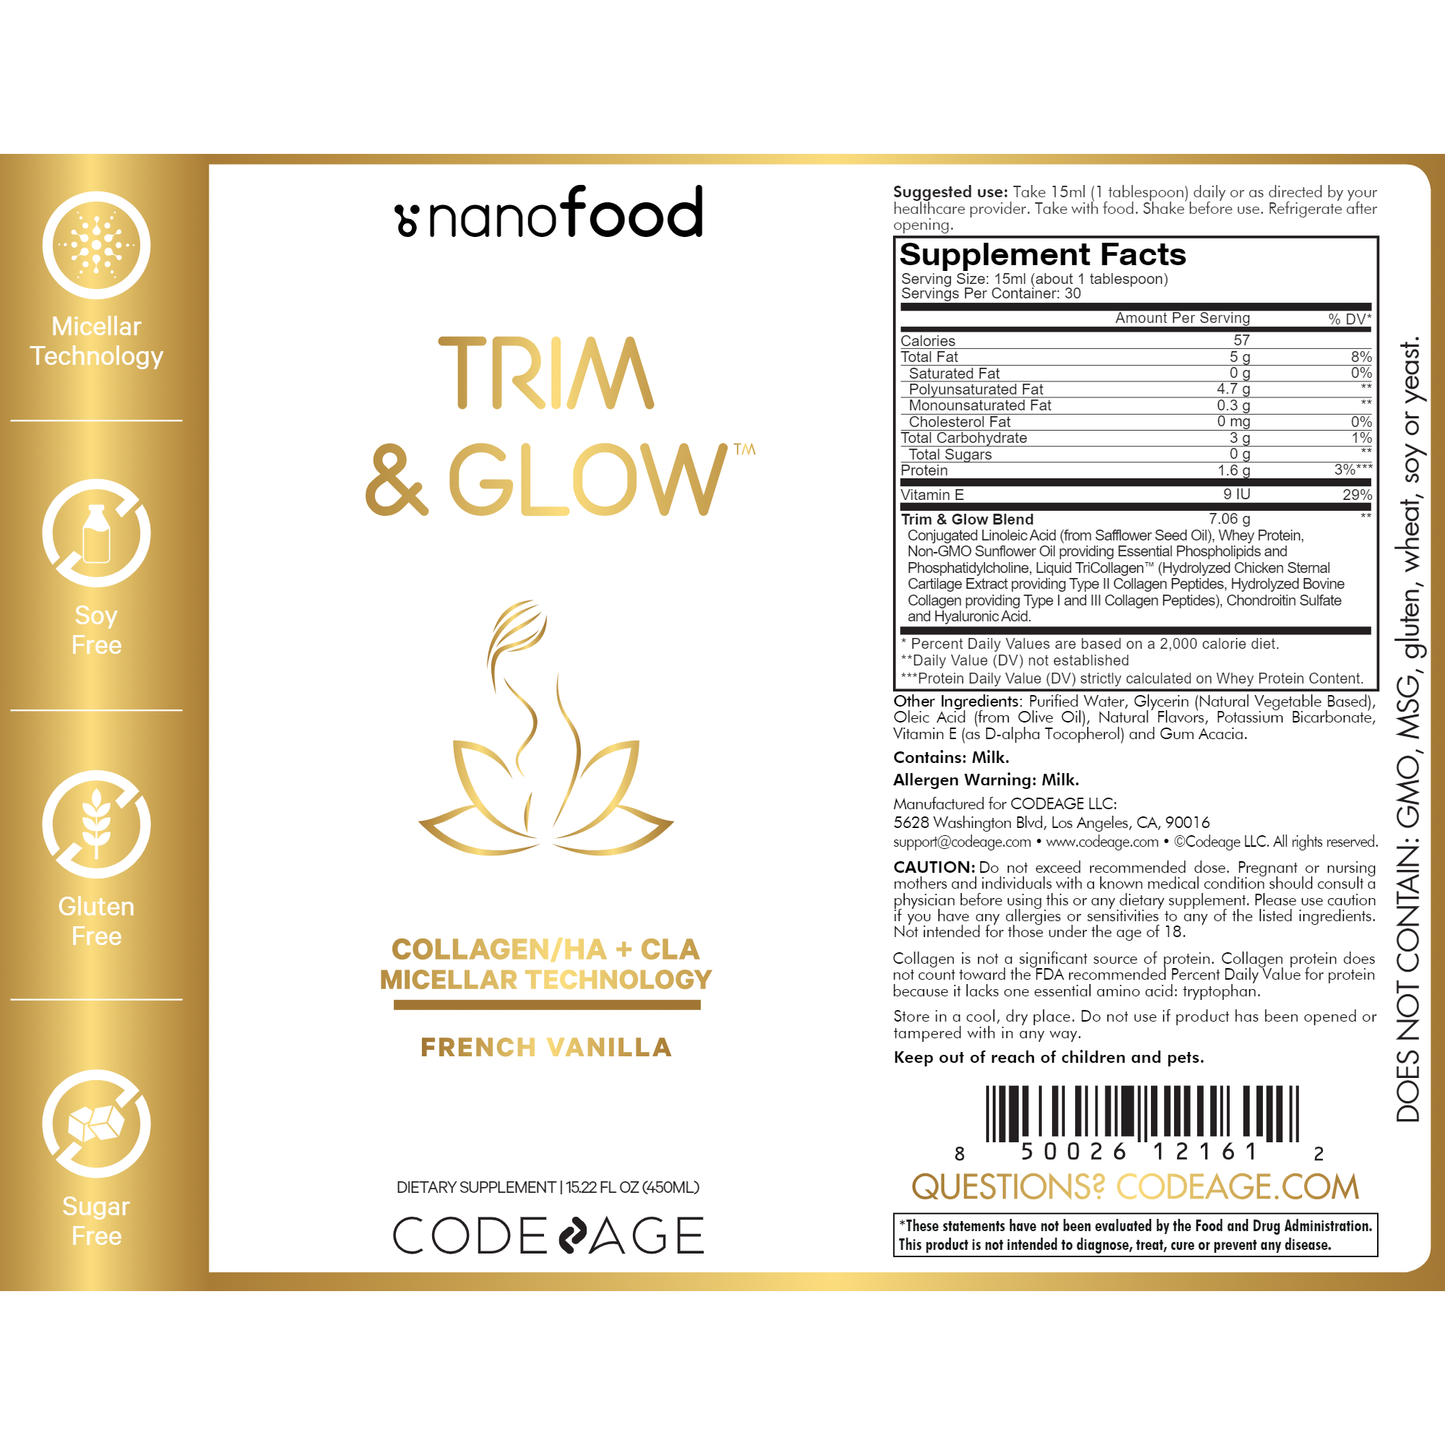 Trim & Glow French Vanilla